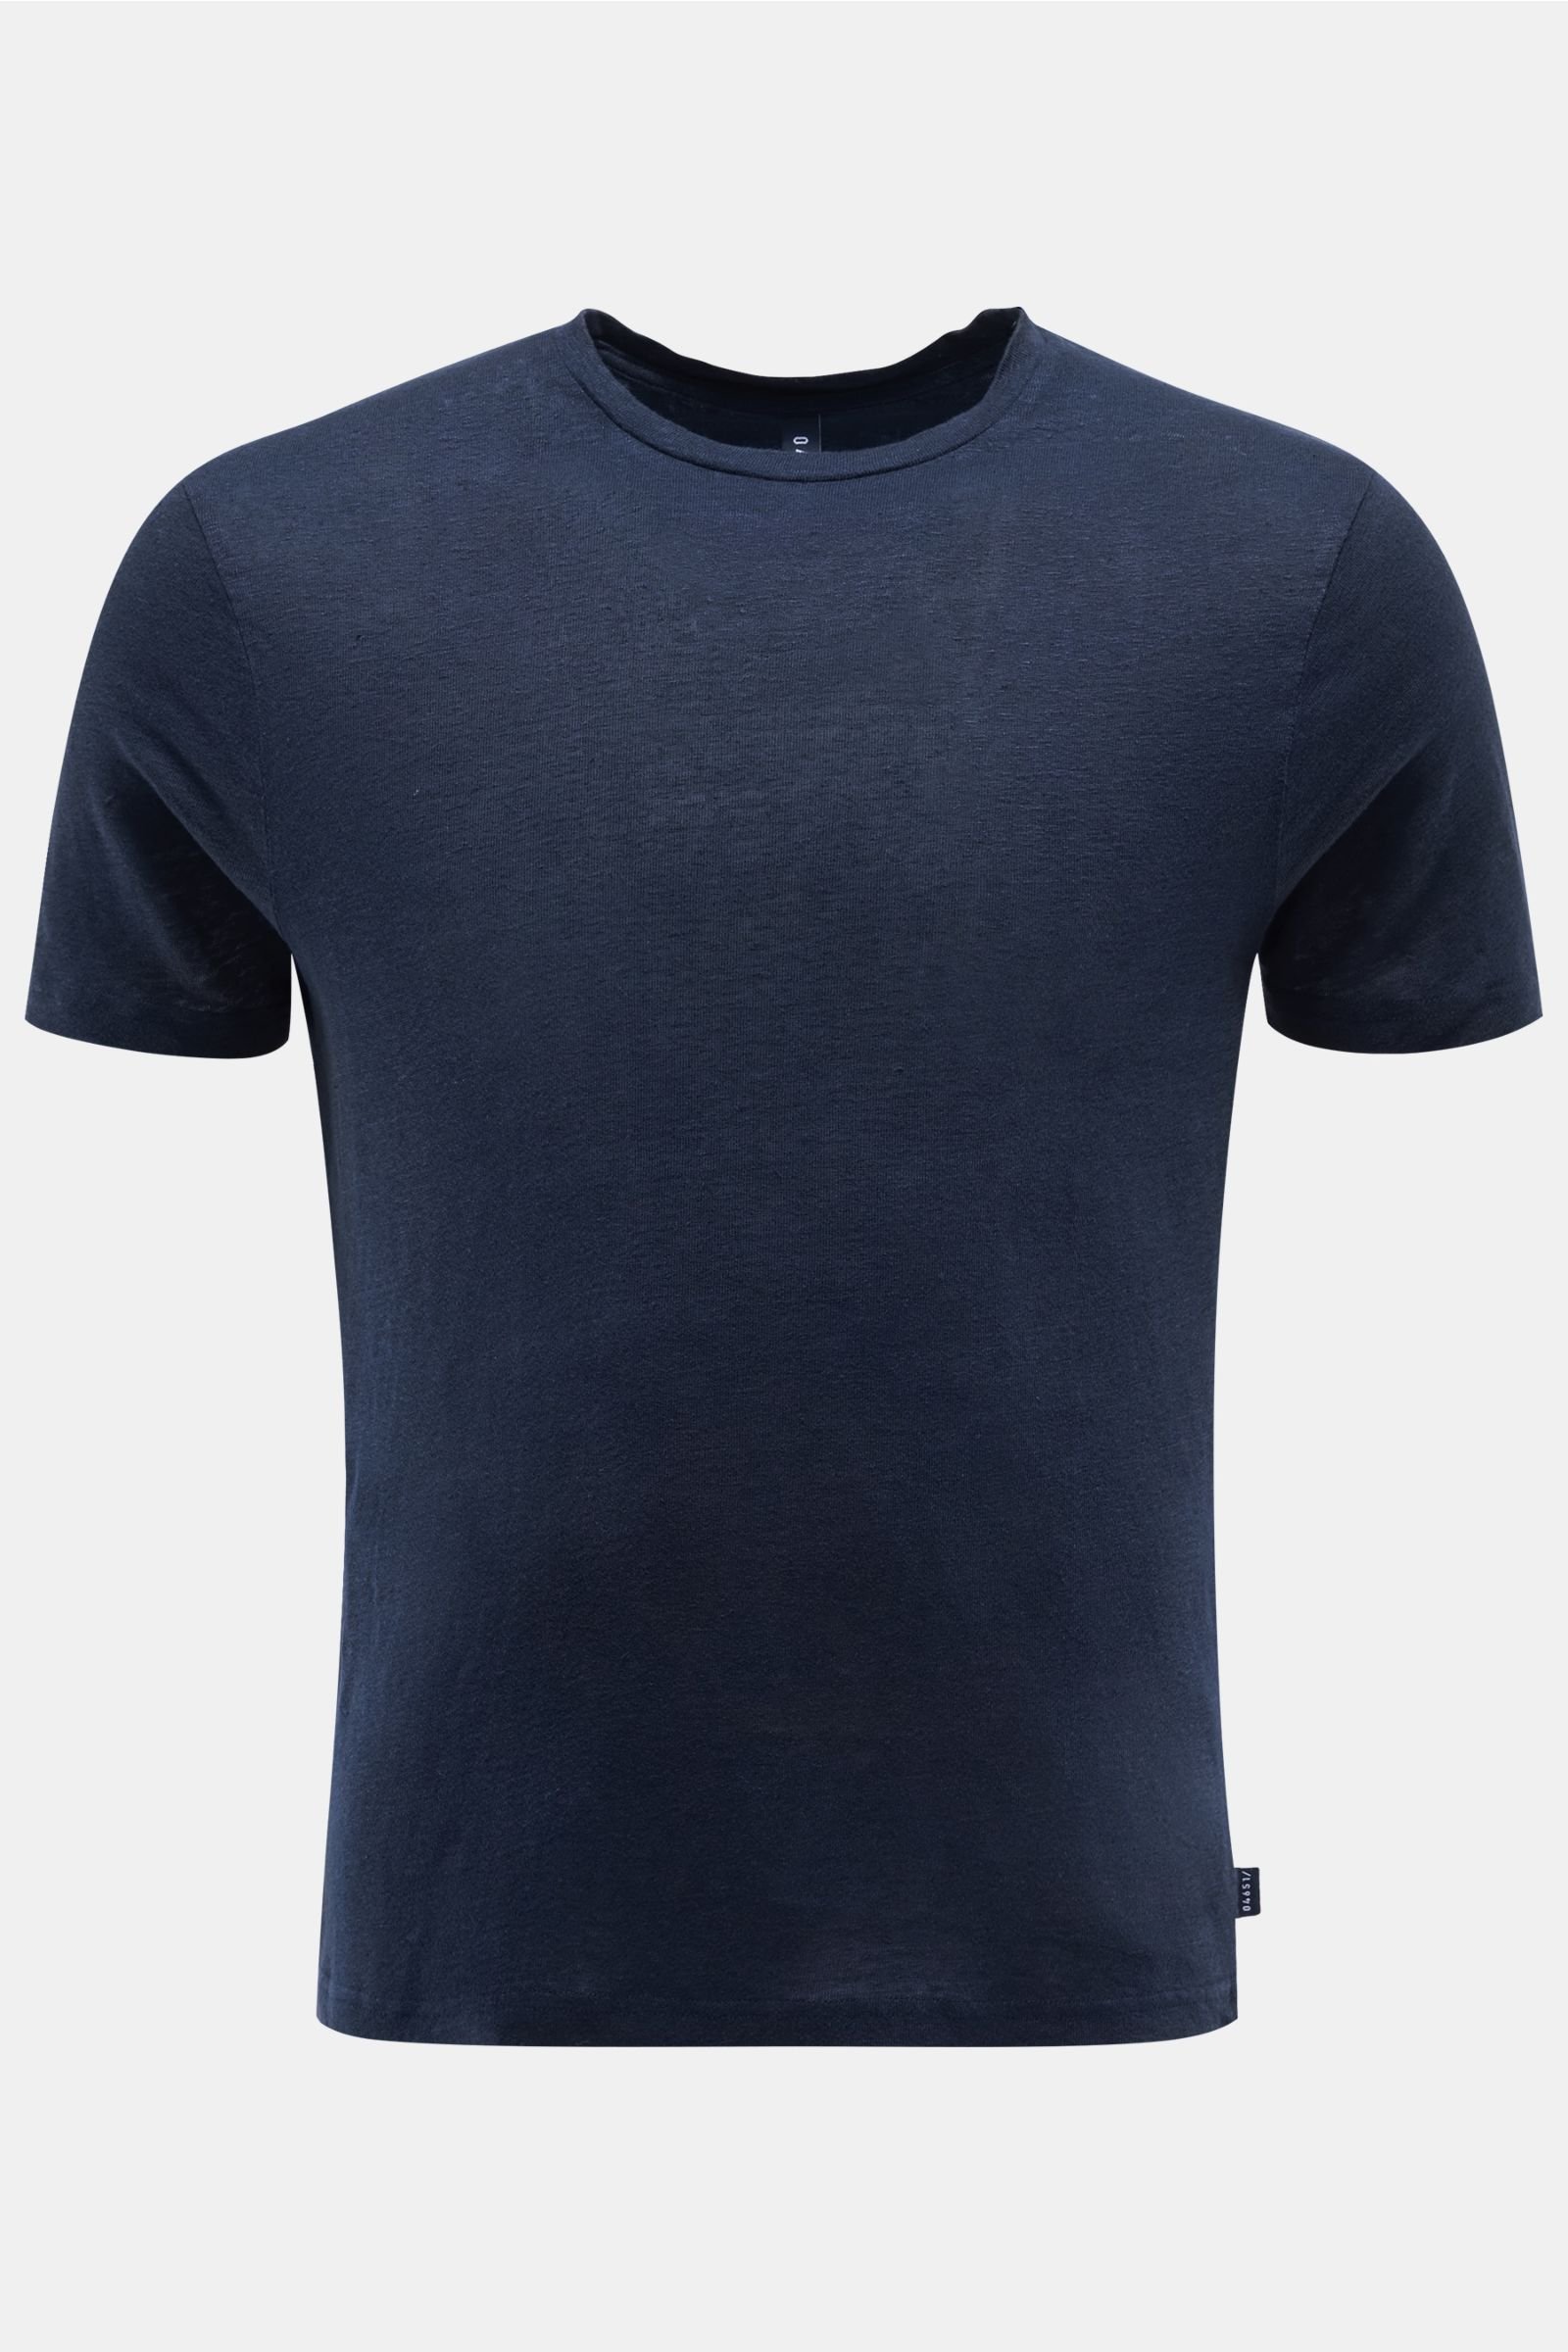 Linen crew neck T-shirt navy